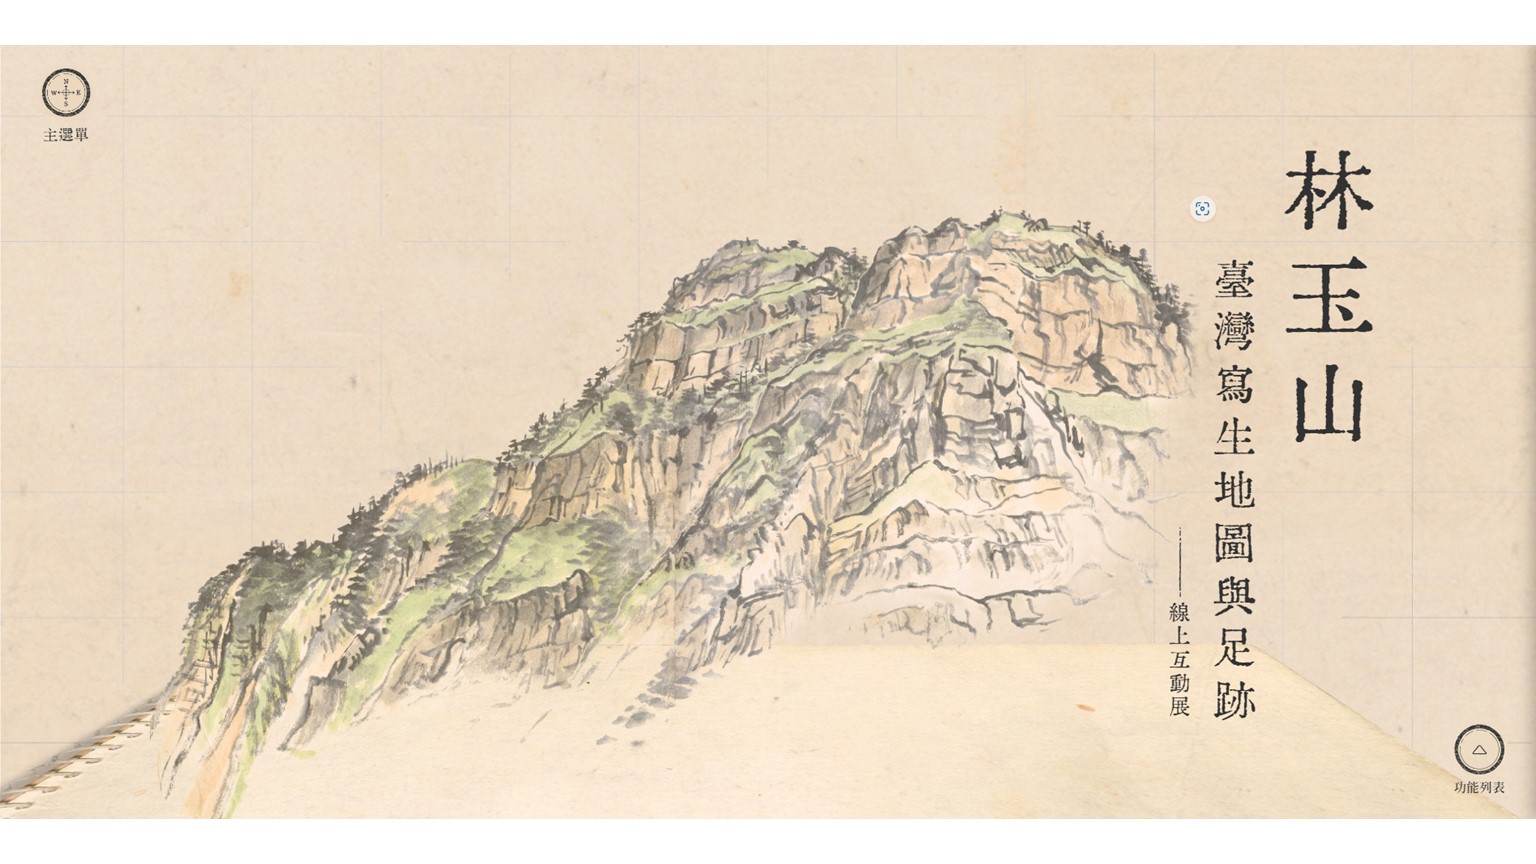 國美館規劃了「林玉山臺灣寫生地圖與足跡」與「國美典藏數位博物館─我腦海中的地方，會真的存在」兩項線上展覽，